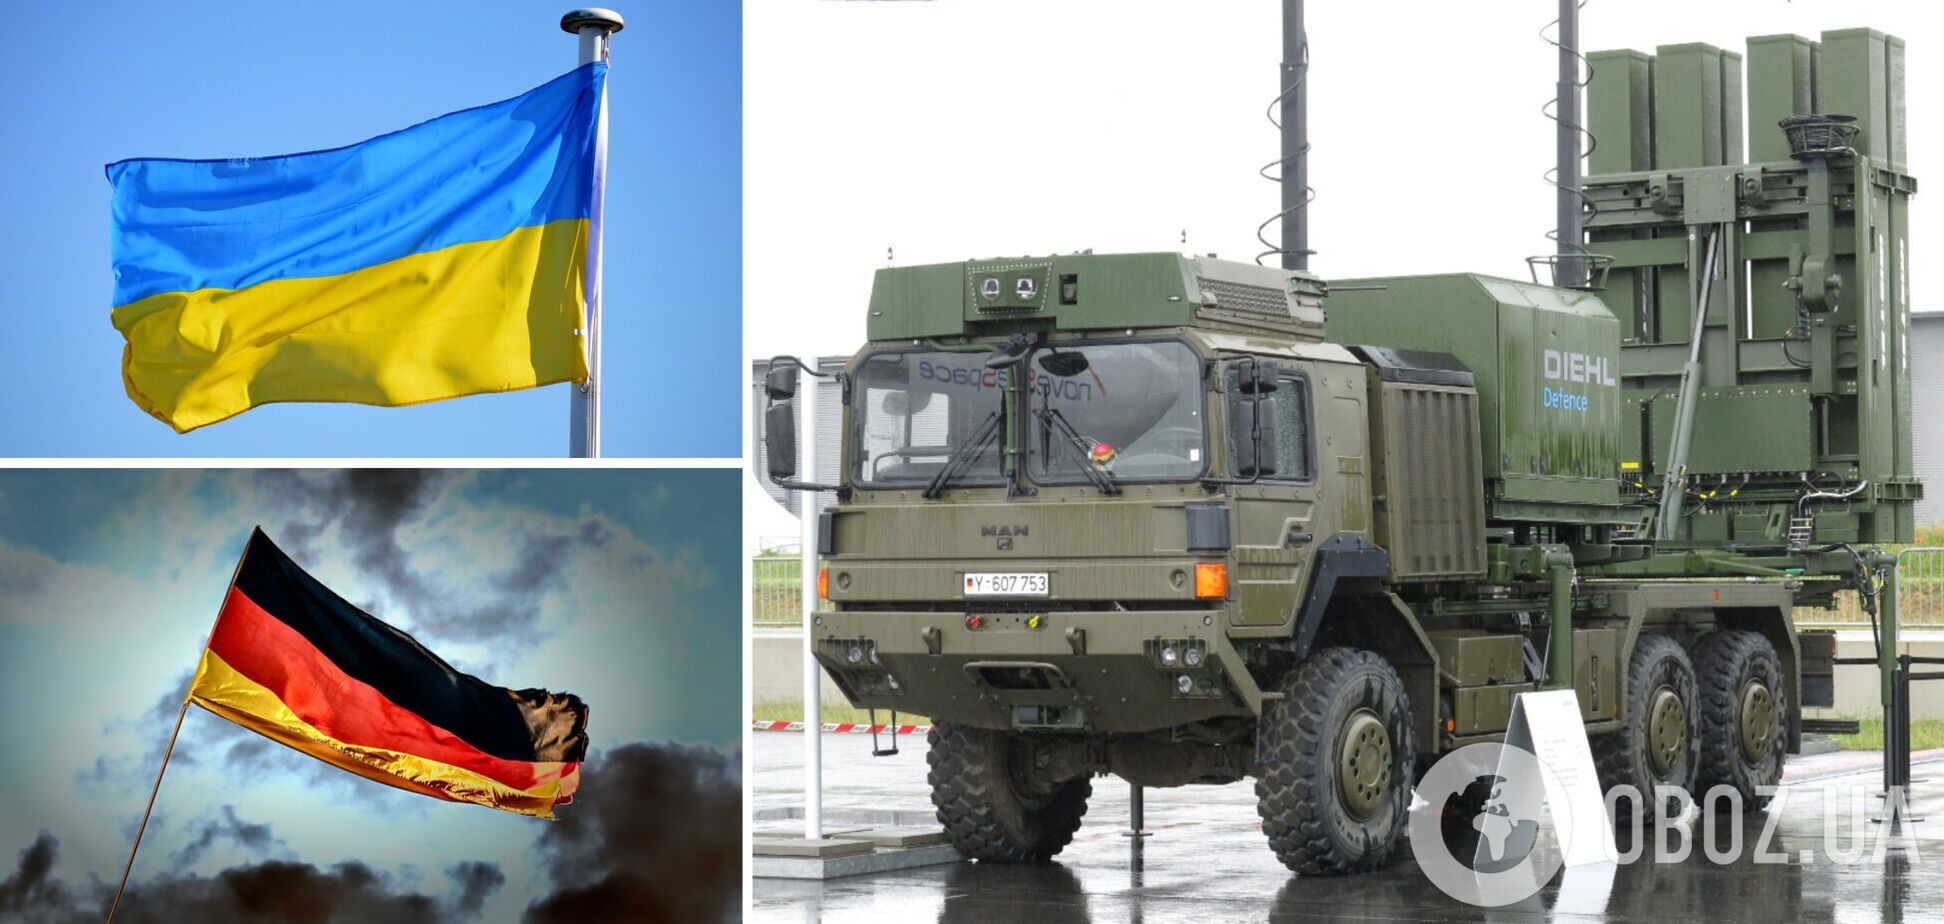 Германия передала Украине вторую систему ПВО Iris-T – Spiegel